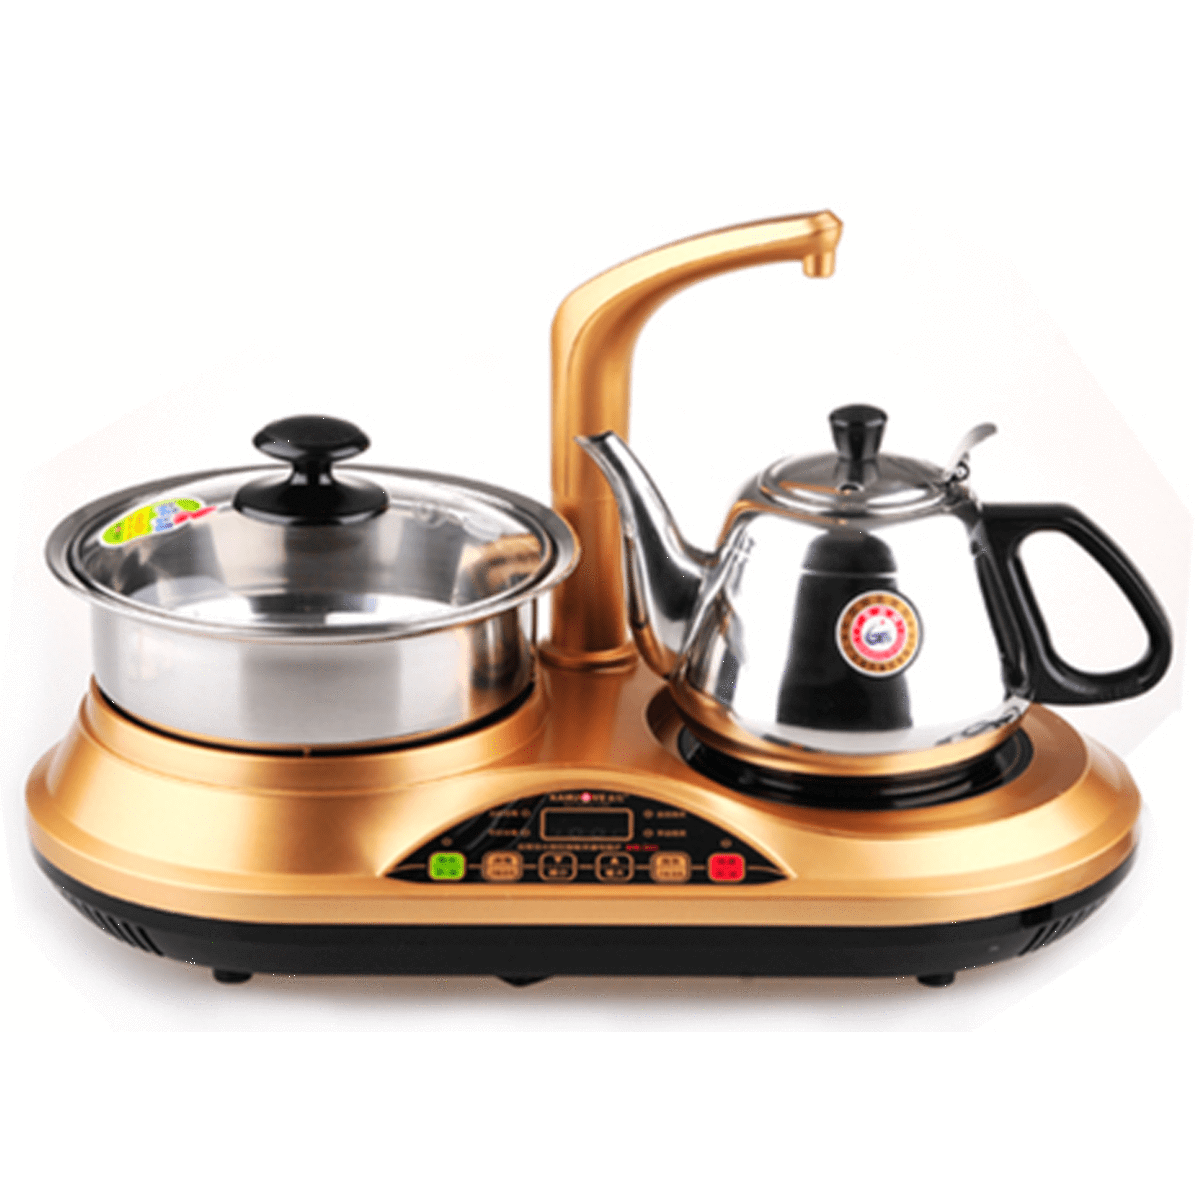 Kamjove Golden Kettle automatic water pumping tea maker